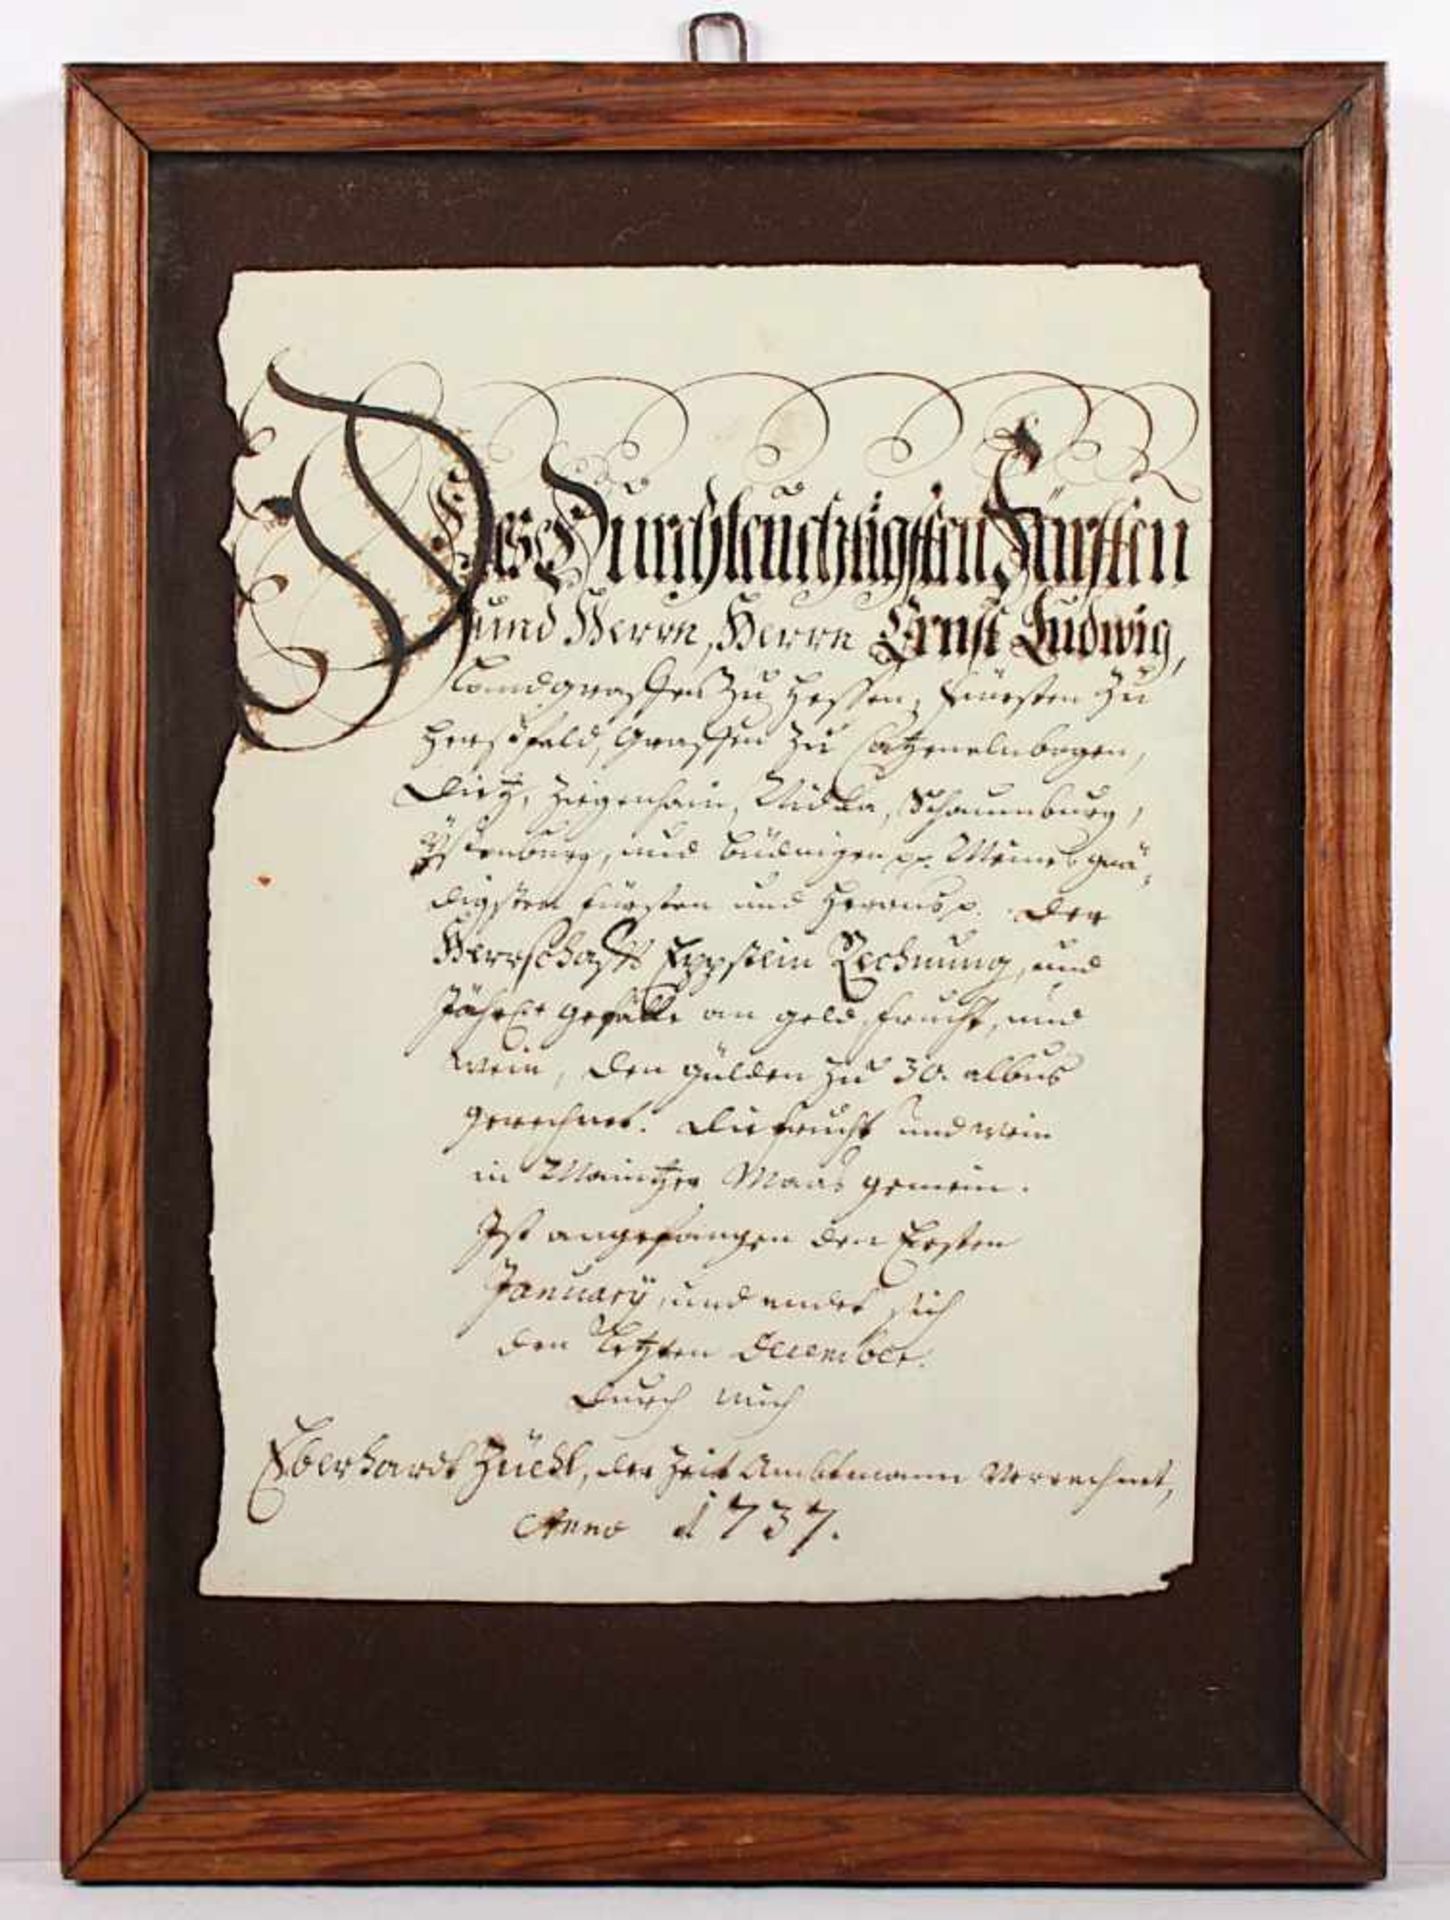 URKUNDE, Tusche auf Papier, 28 x 20, datiert 1737, R.- - -22.00 % buyer's premium on the hammer - Bild 2 aus 2